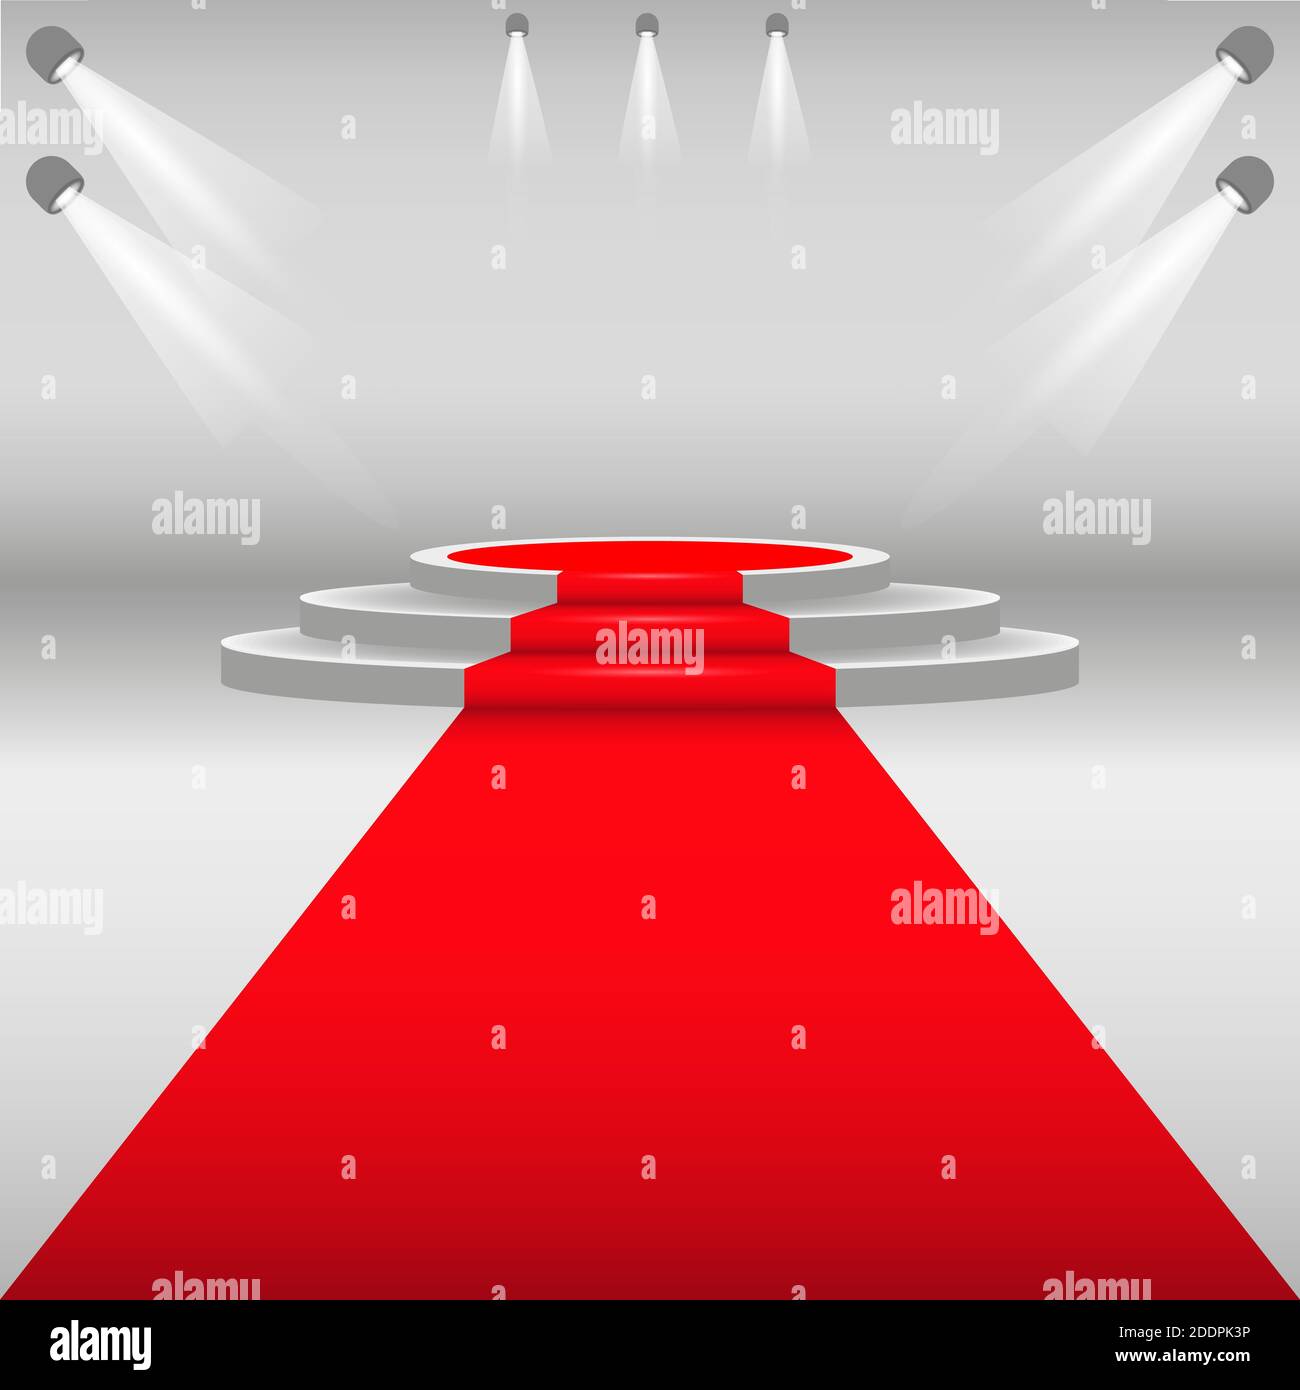 Roter Teppich und Podium. Weißer runder Sockel mit roter Spur. Bühnenpodium mit Beleuchtung, Szenario der Preisverleihung. Vektorgrafik Stock Vektor